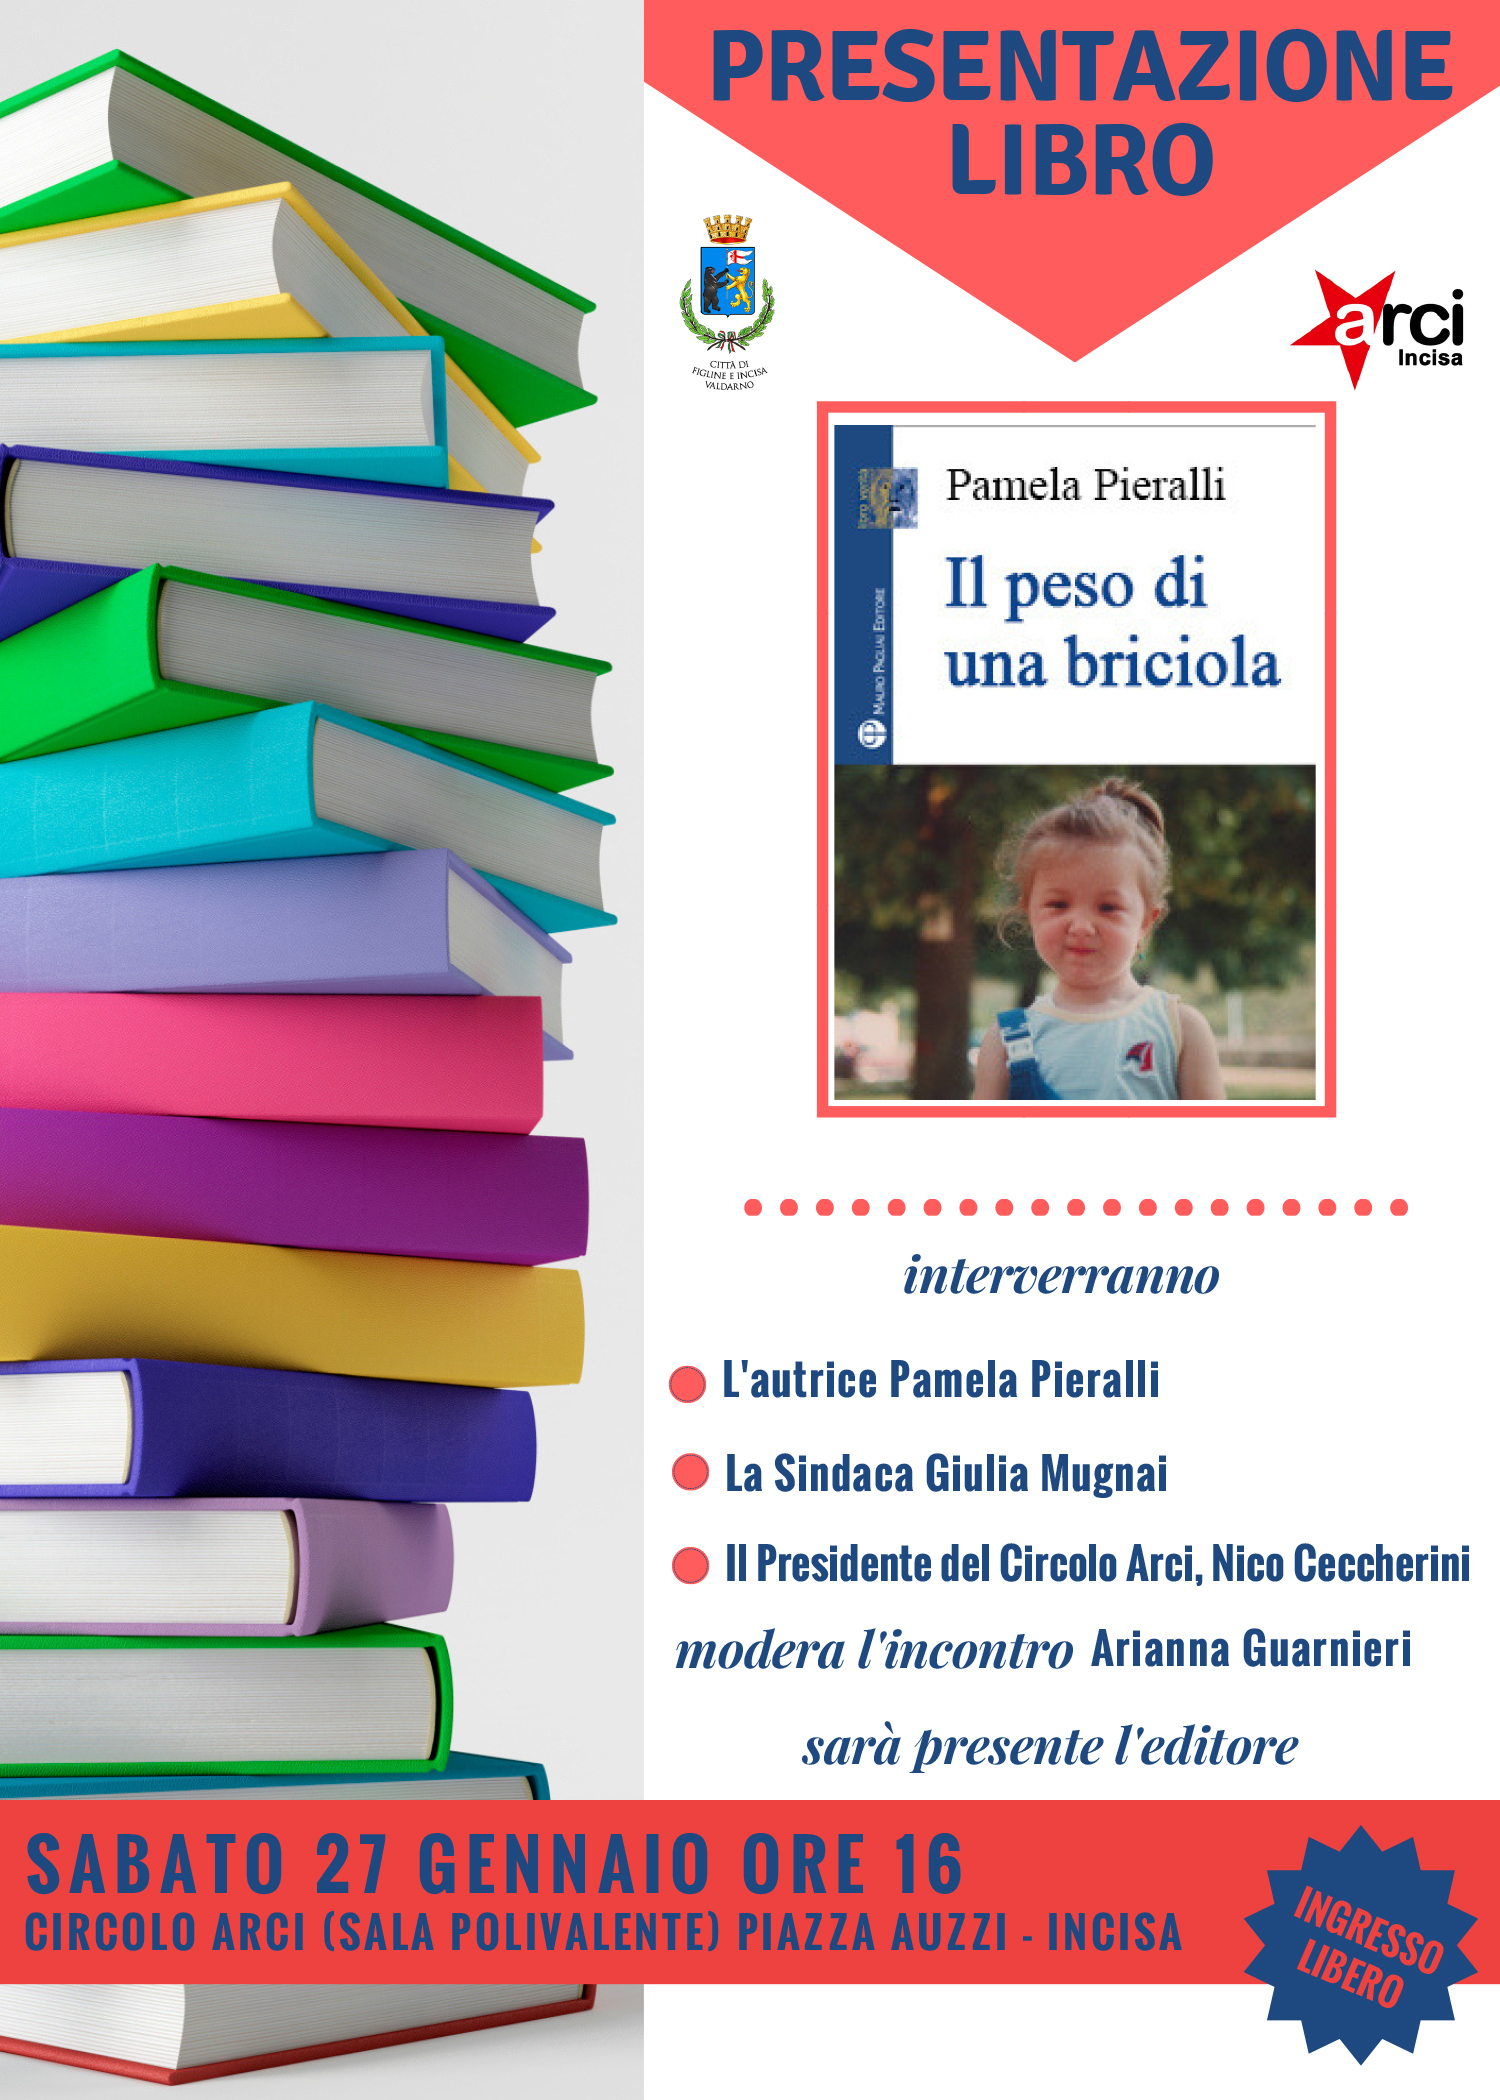 Pamela Pieralli presenta il suo libro al circolo Arci Incisa